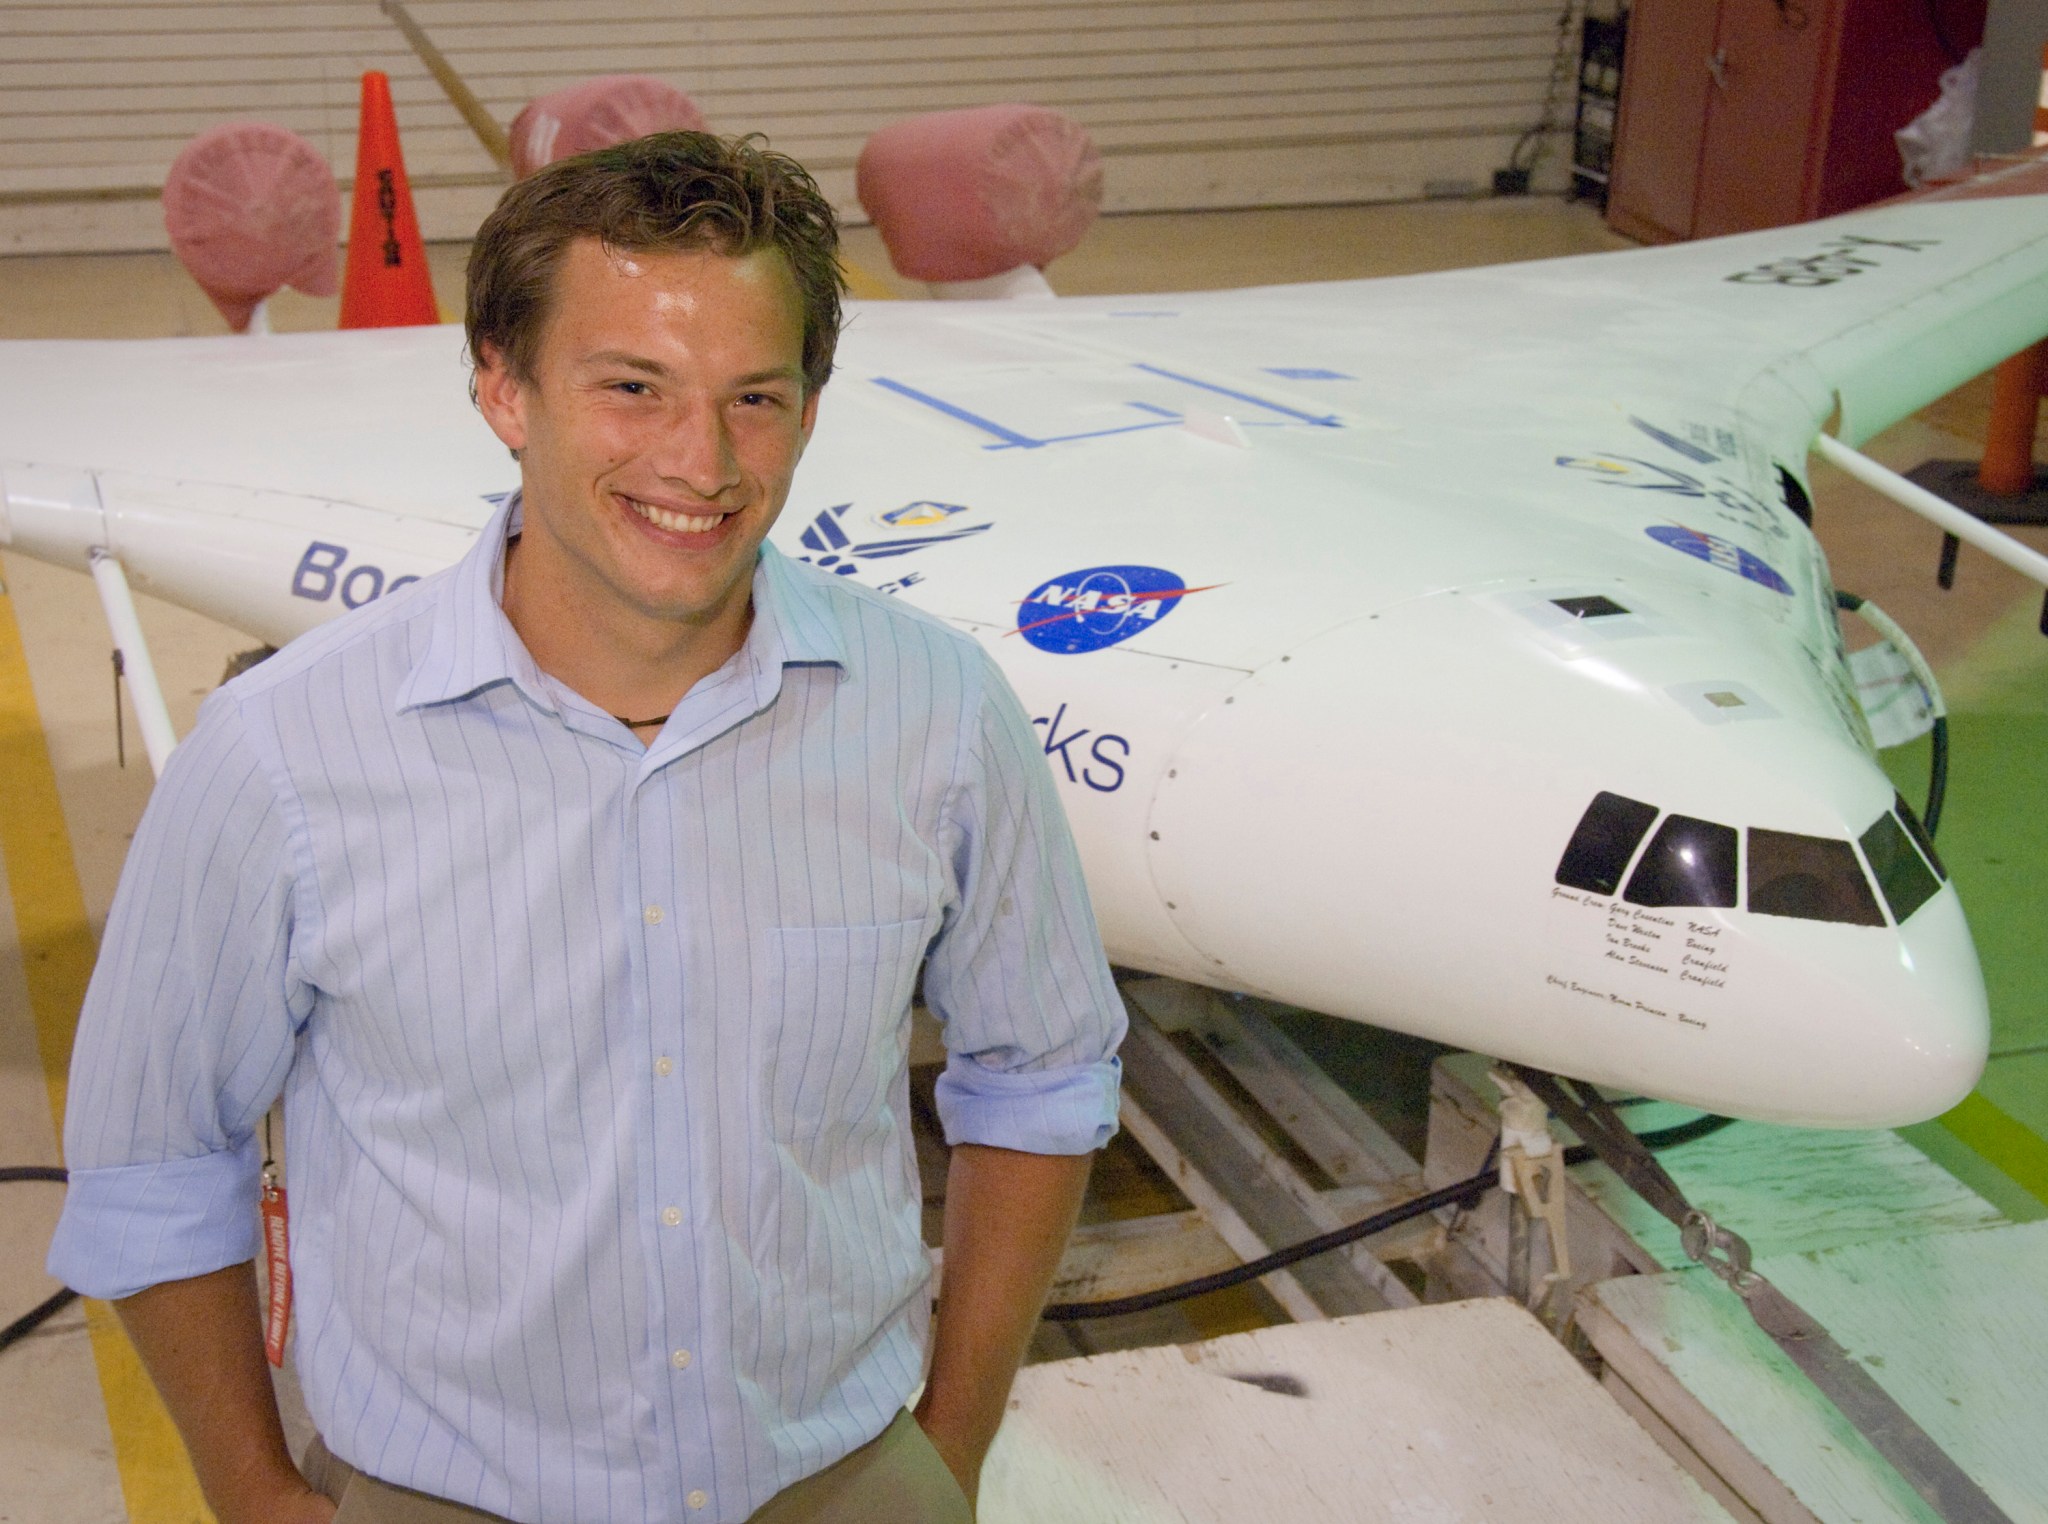 An intern standing near the X-48B.